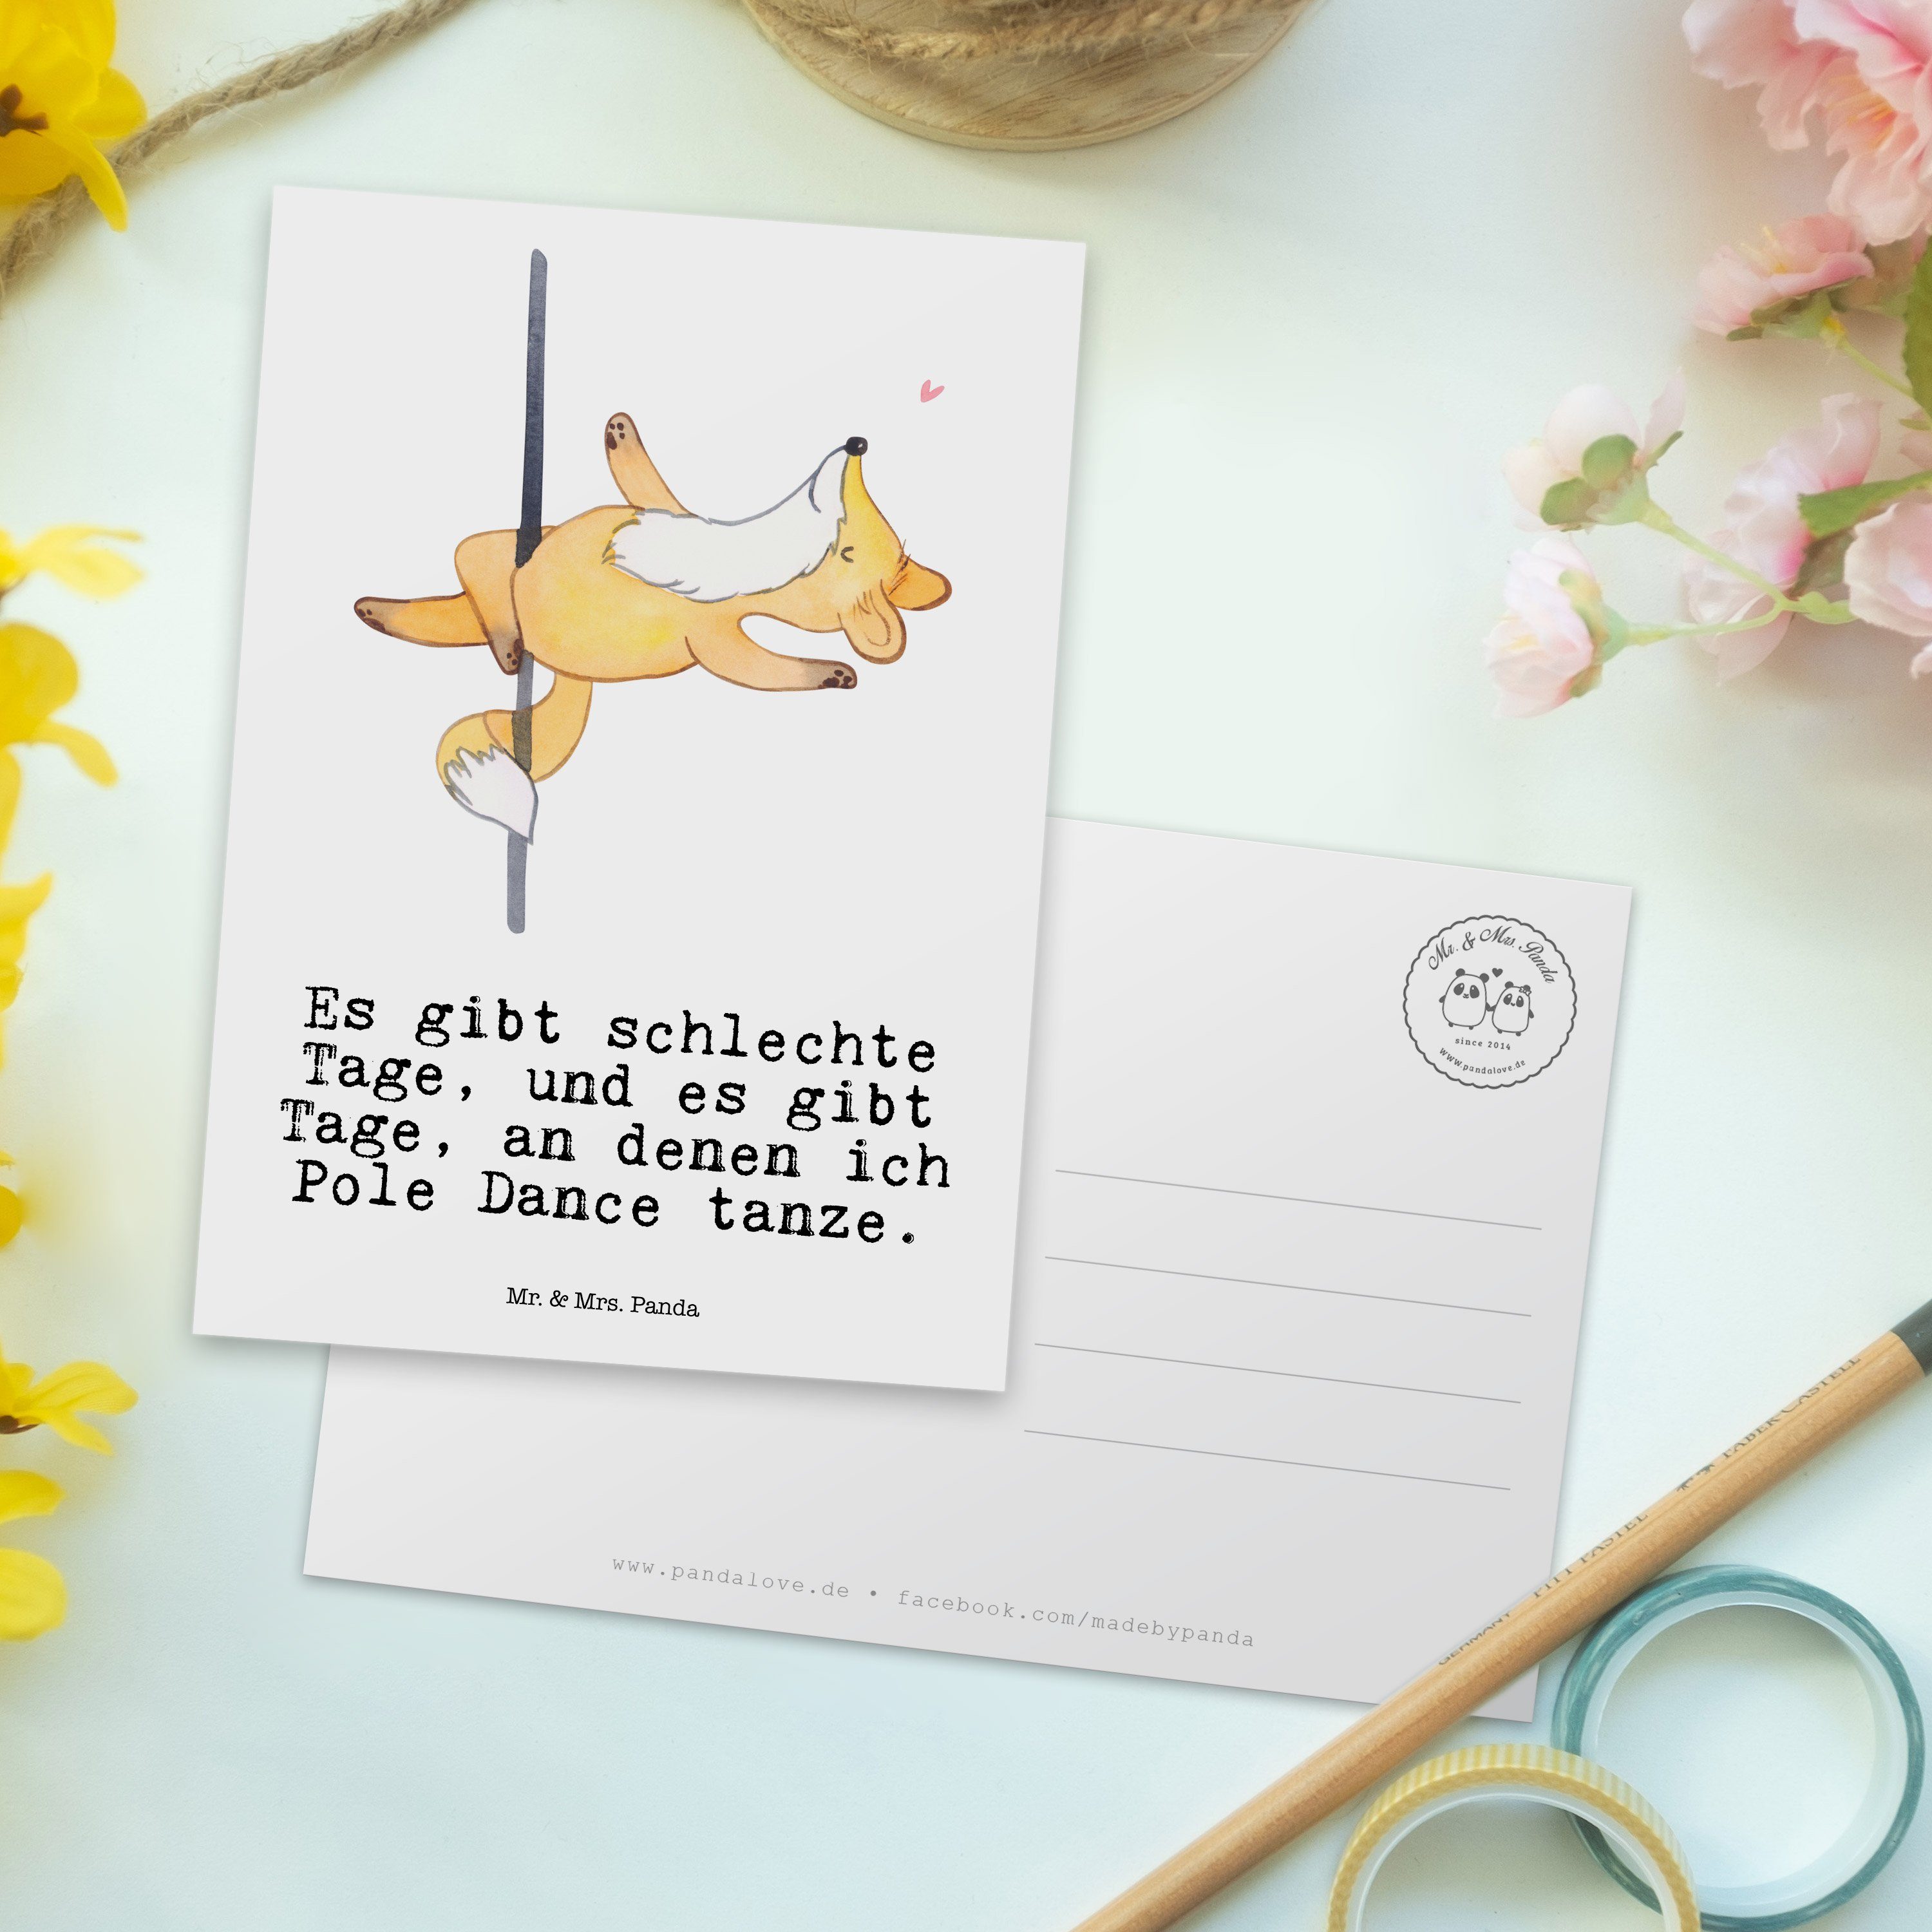 Geschenk, Postkarte - Tage Poledance Hobby, Fuchs Weiß Panda - Mr. Einladungskarte & Mrs. Karte,